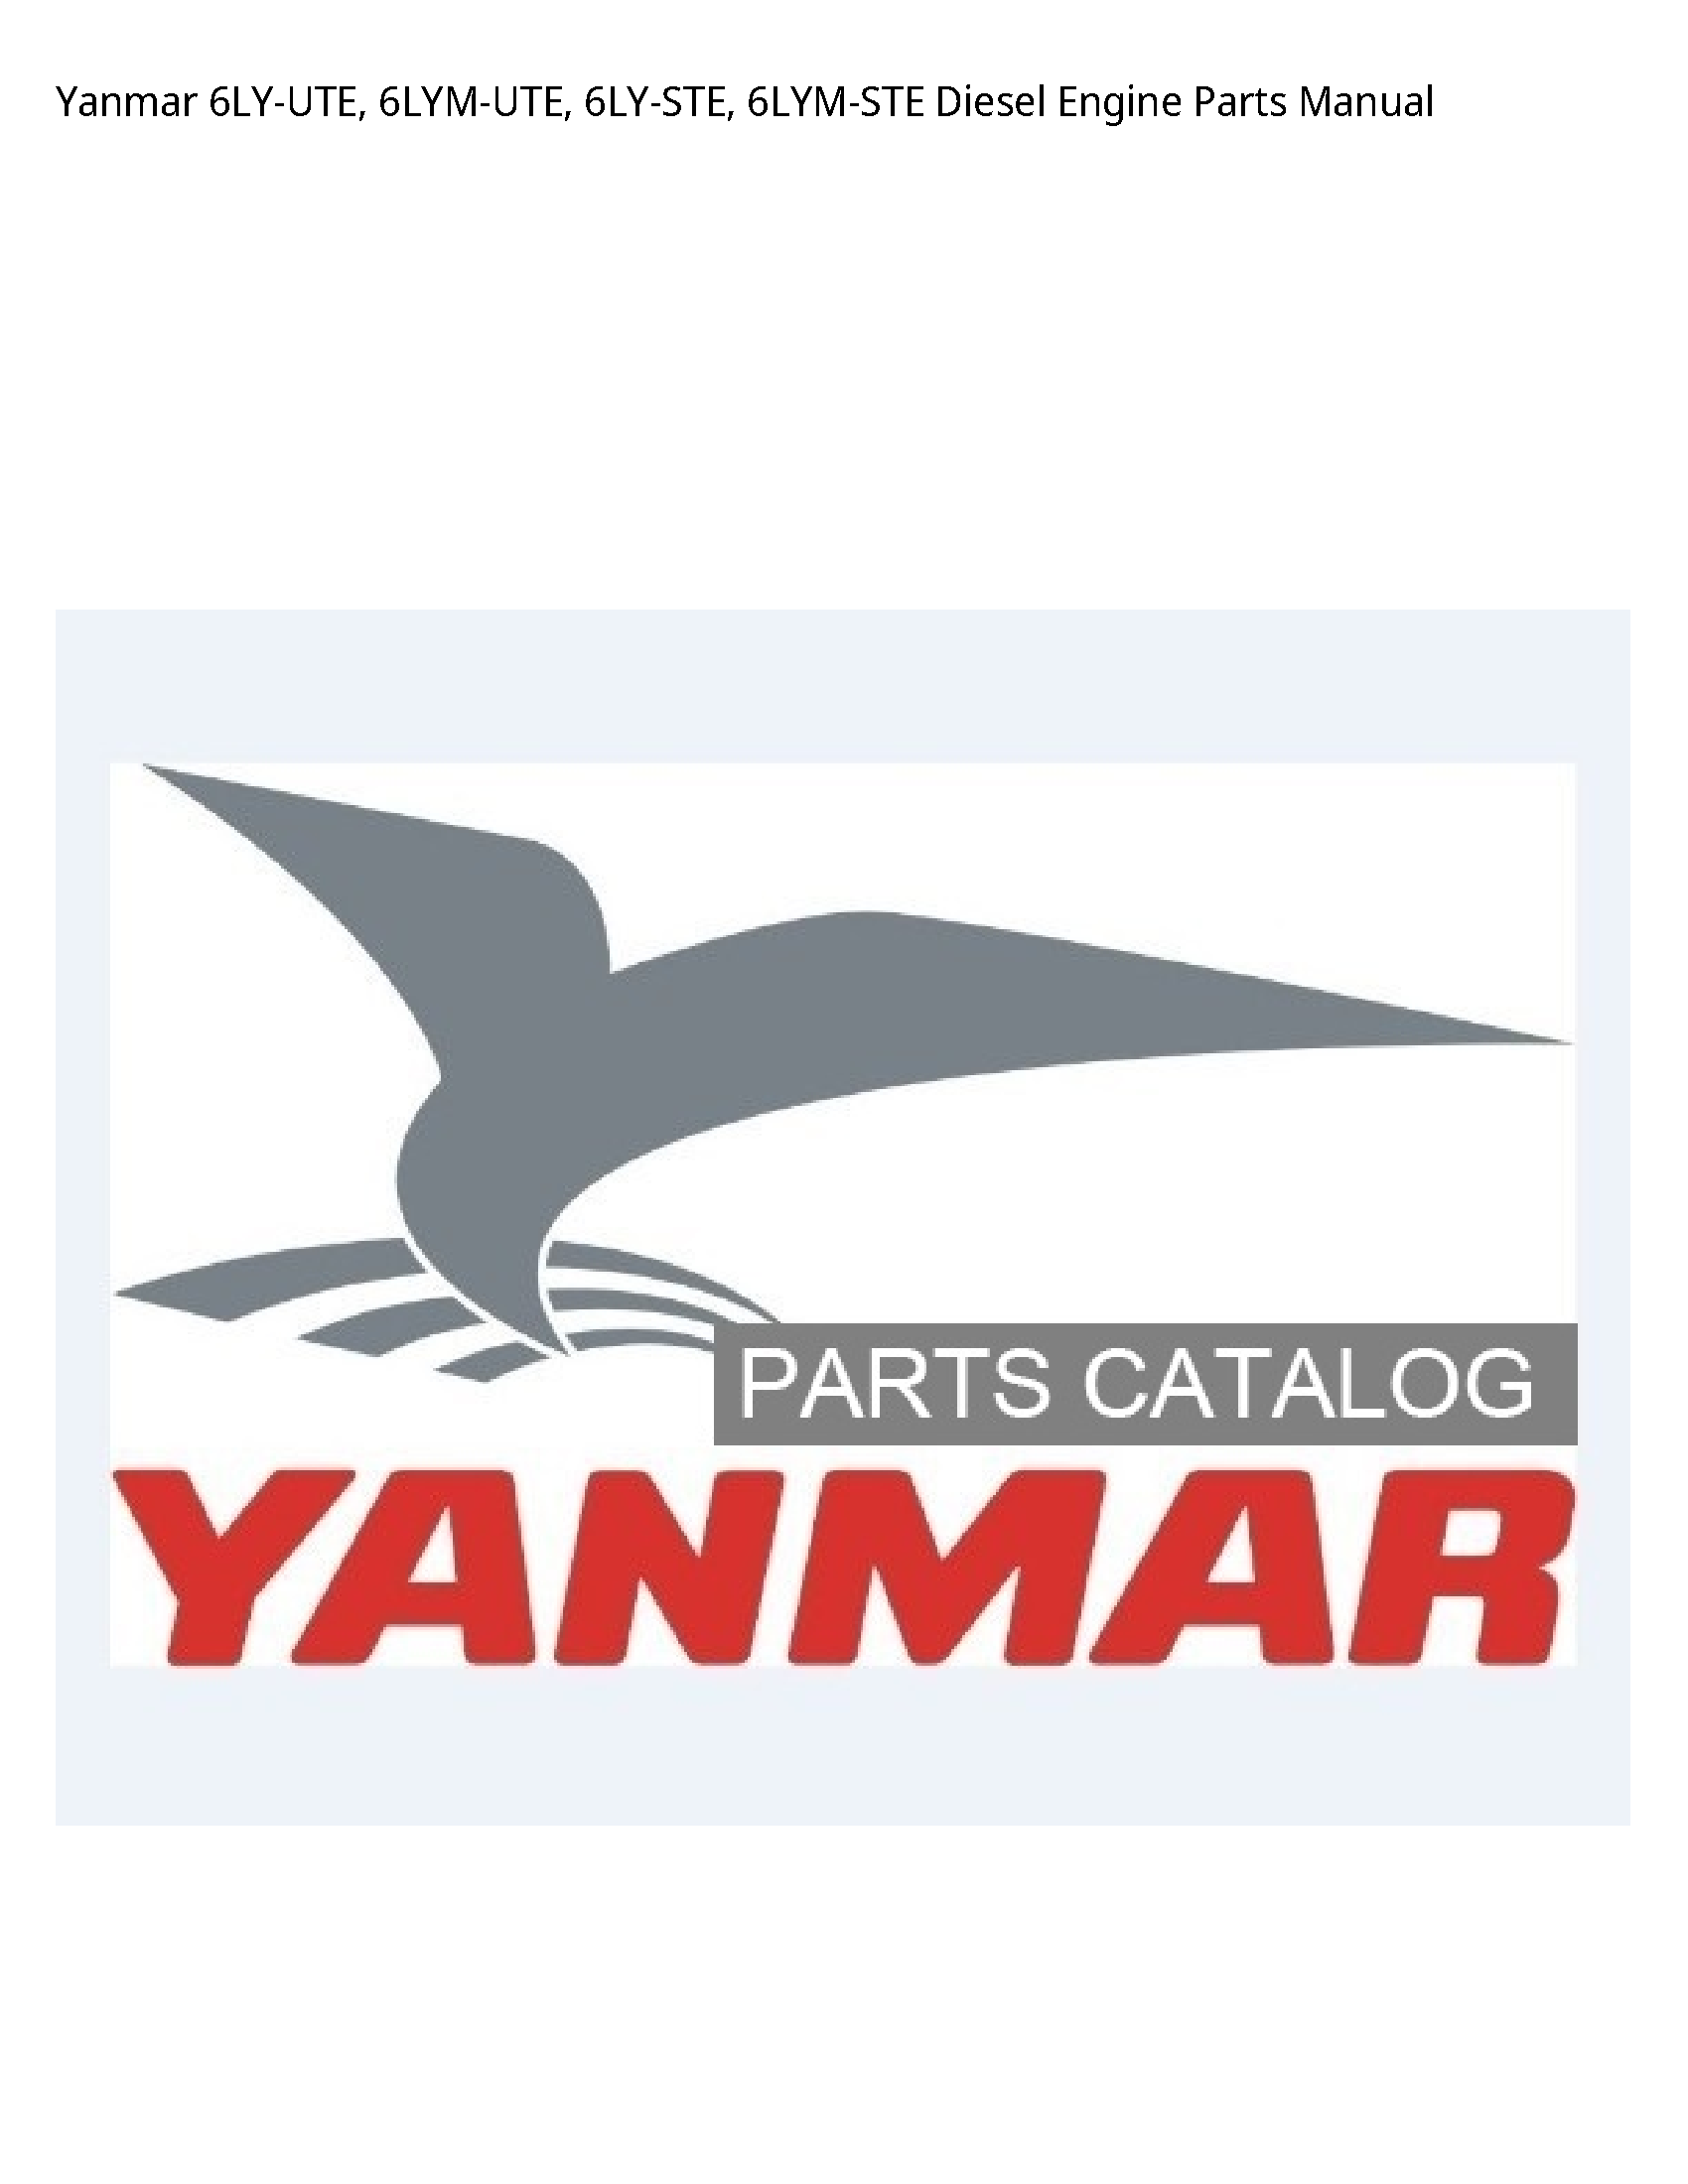 Yanmar 6LY-UTE Diesel Engine Parts manual